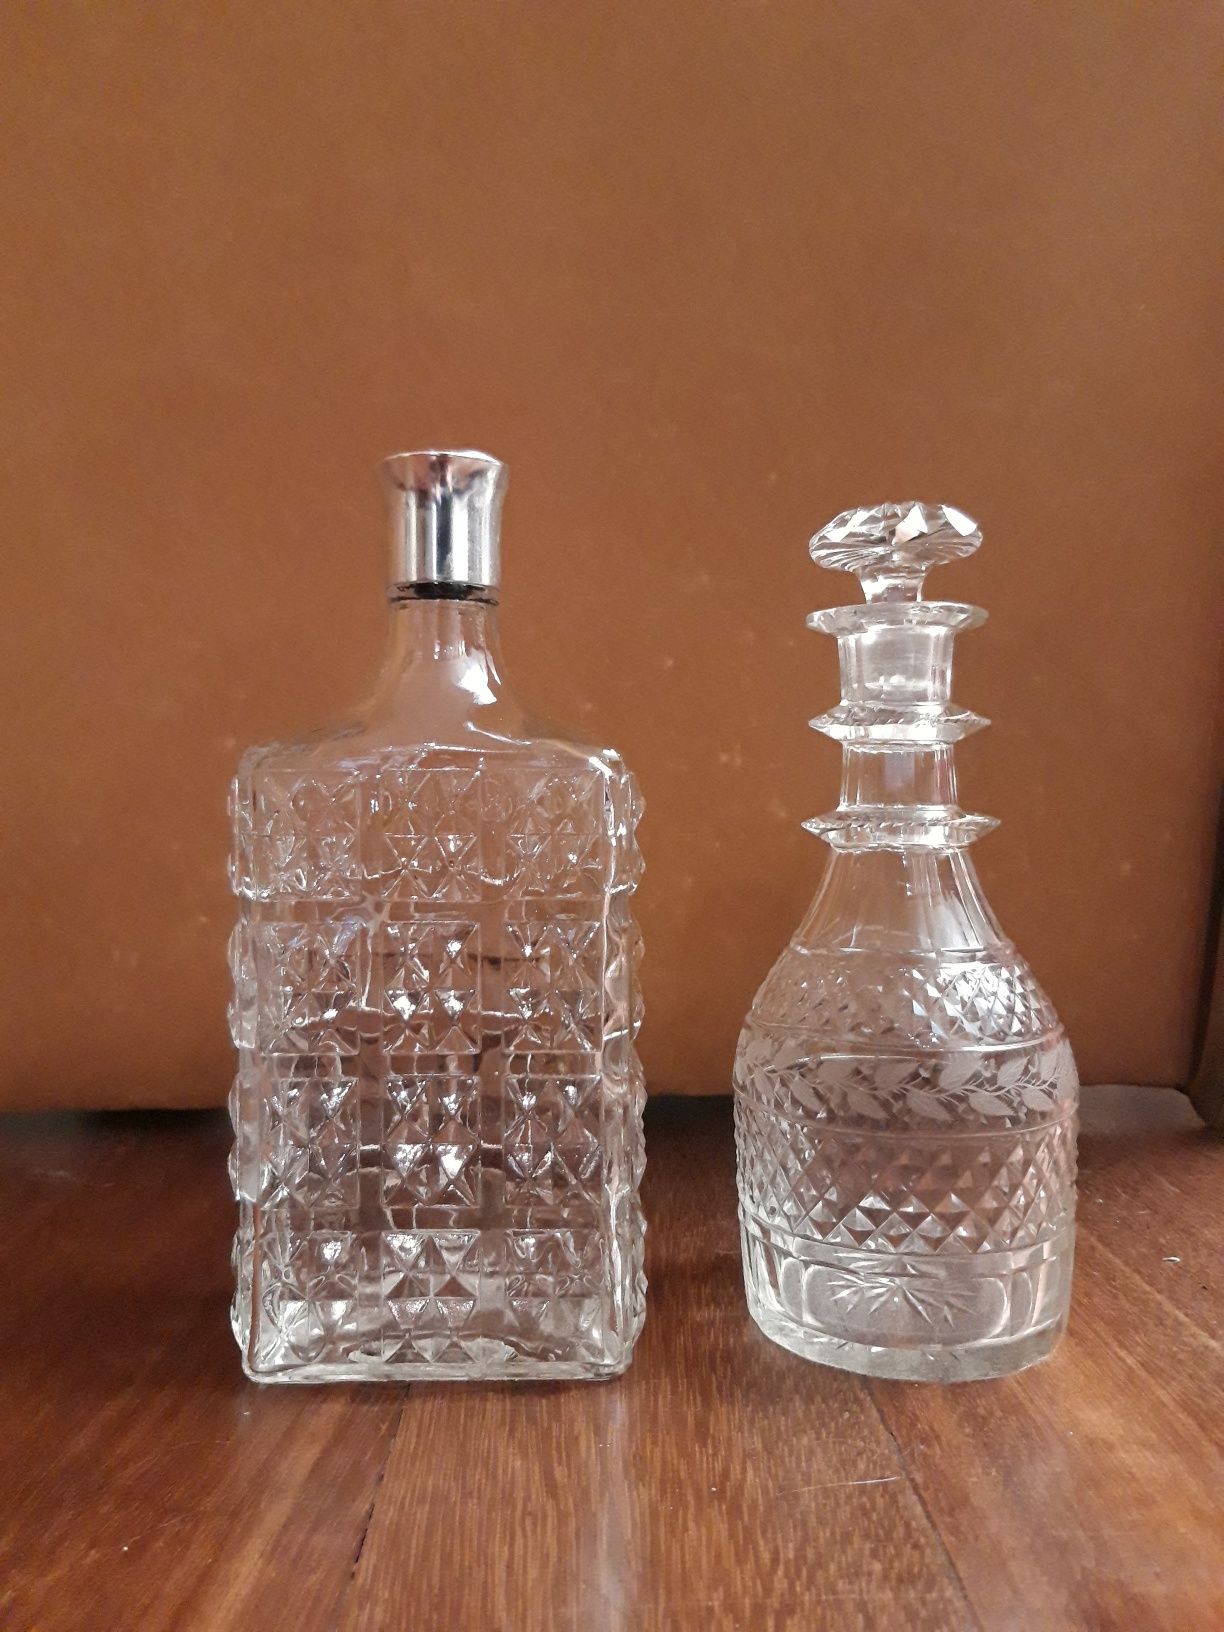 Garrafa de whisky e garrafa de licor (lavrada e antiga)